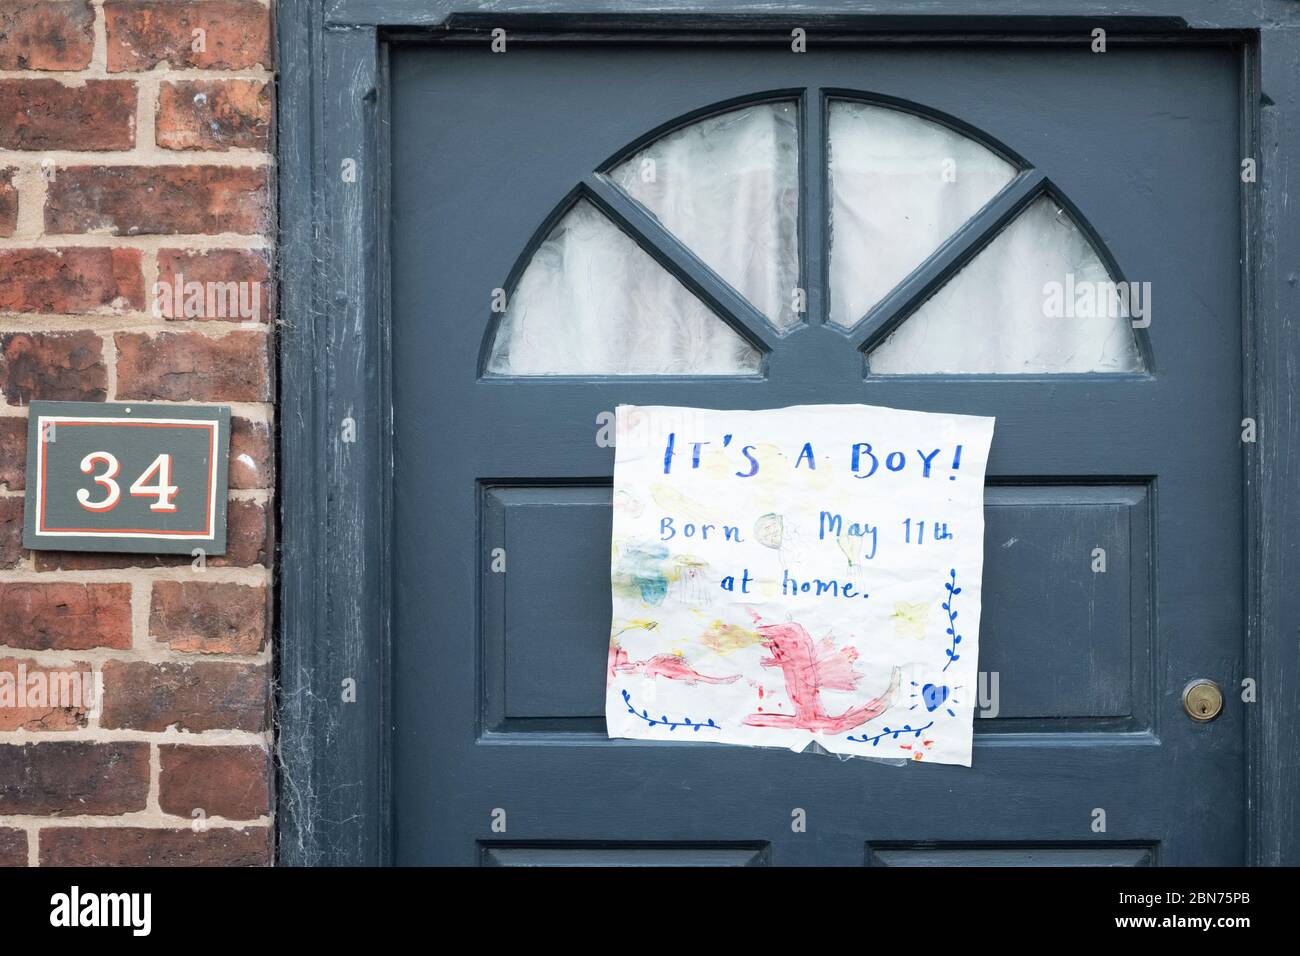 Ankündigung der Geburt eines neuen Babys, das während der Sperrung der Coronavirus-Pandemie an eine Haustür in einer kleinen britischen Stadt geflemmt wurde Stockfoto